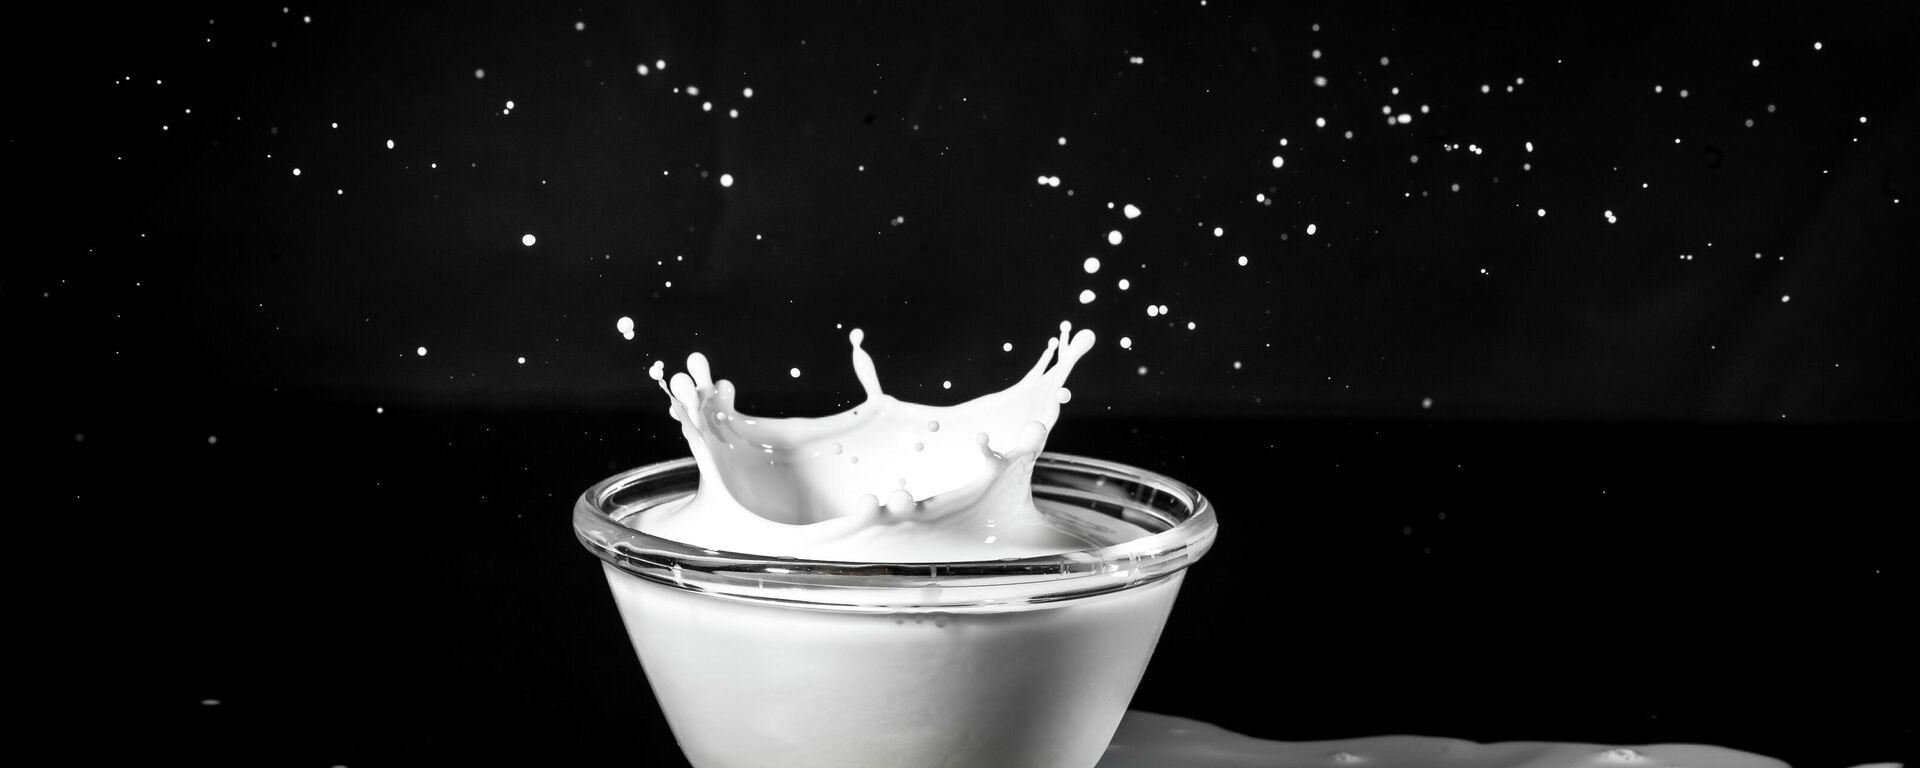 La leche, ilustración - Sputnik Mundo, 1920, 29.03.2021